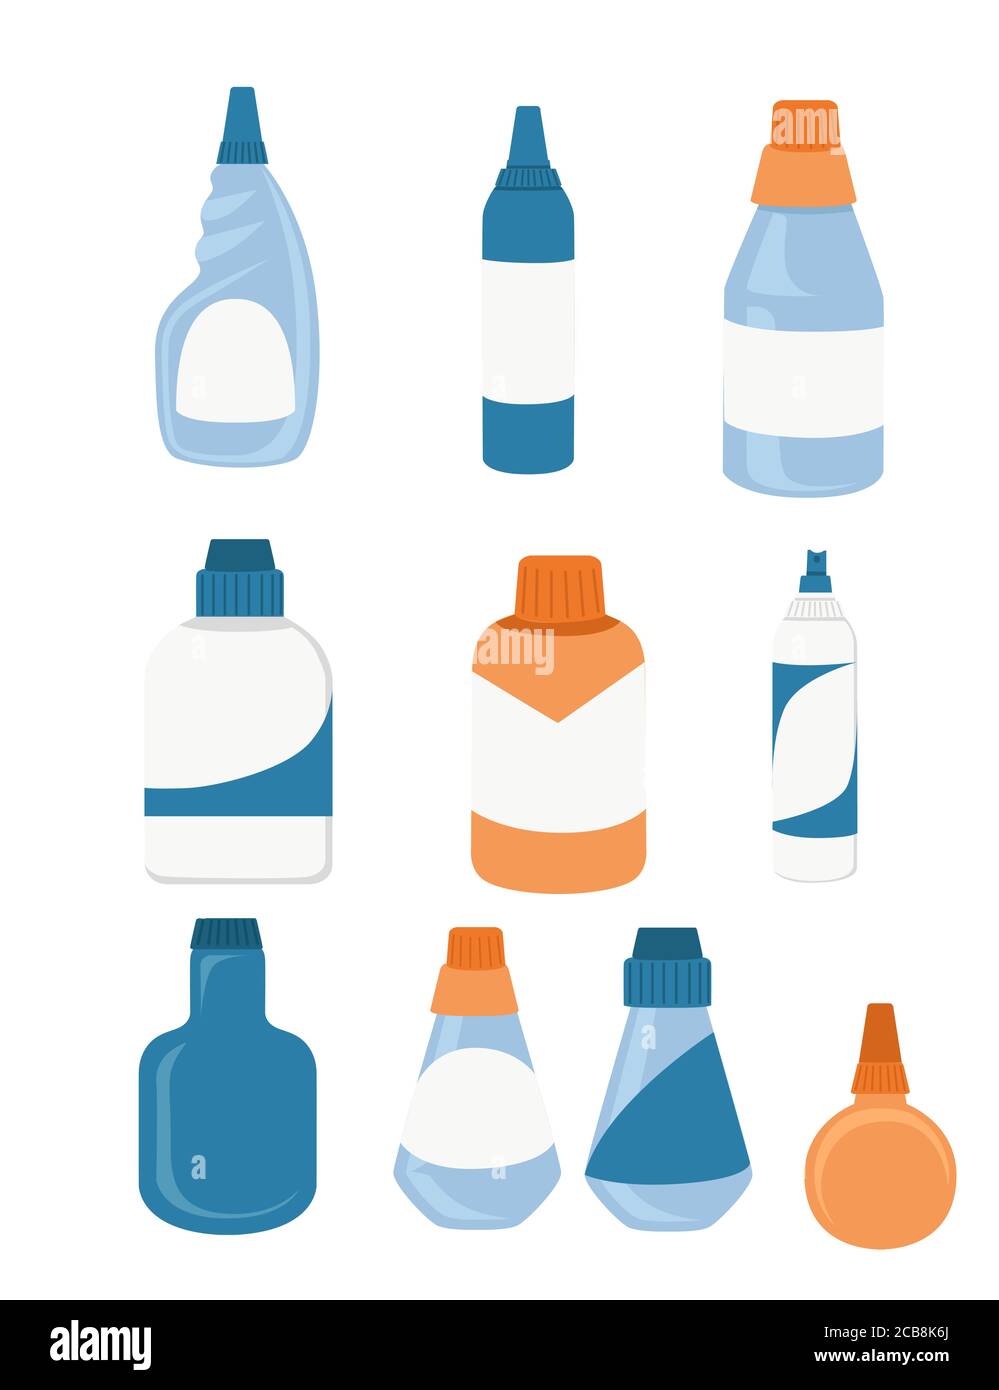 Les bouteilles de produits chimiques ménagers contiennent des fournitures de nettoyage vides et vierges etiquetez l'illustration vectorielle plate isolée sur fond blanc Illustration de Vecteur